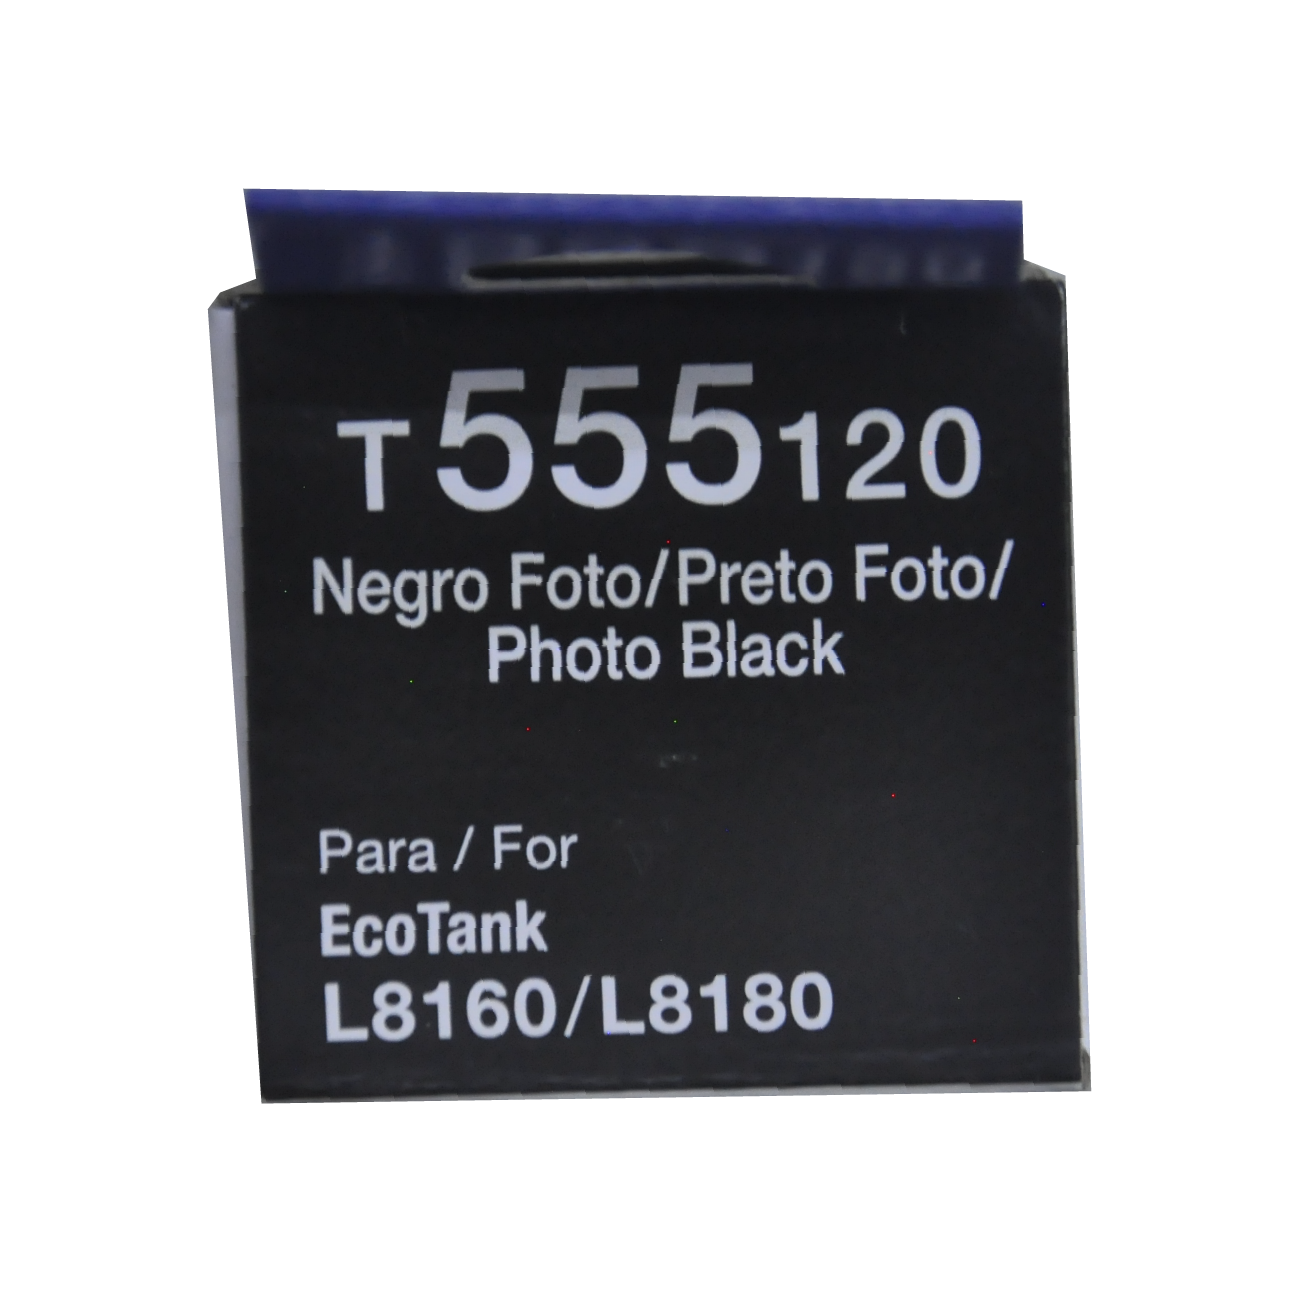 Botella de Tinta Epson T555 Negro Fotográfico (T555120-AL)